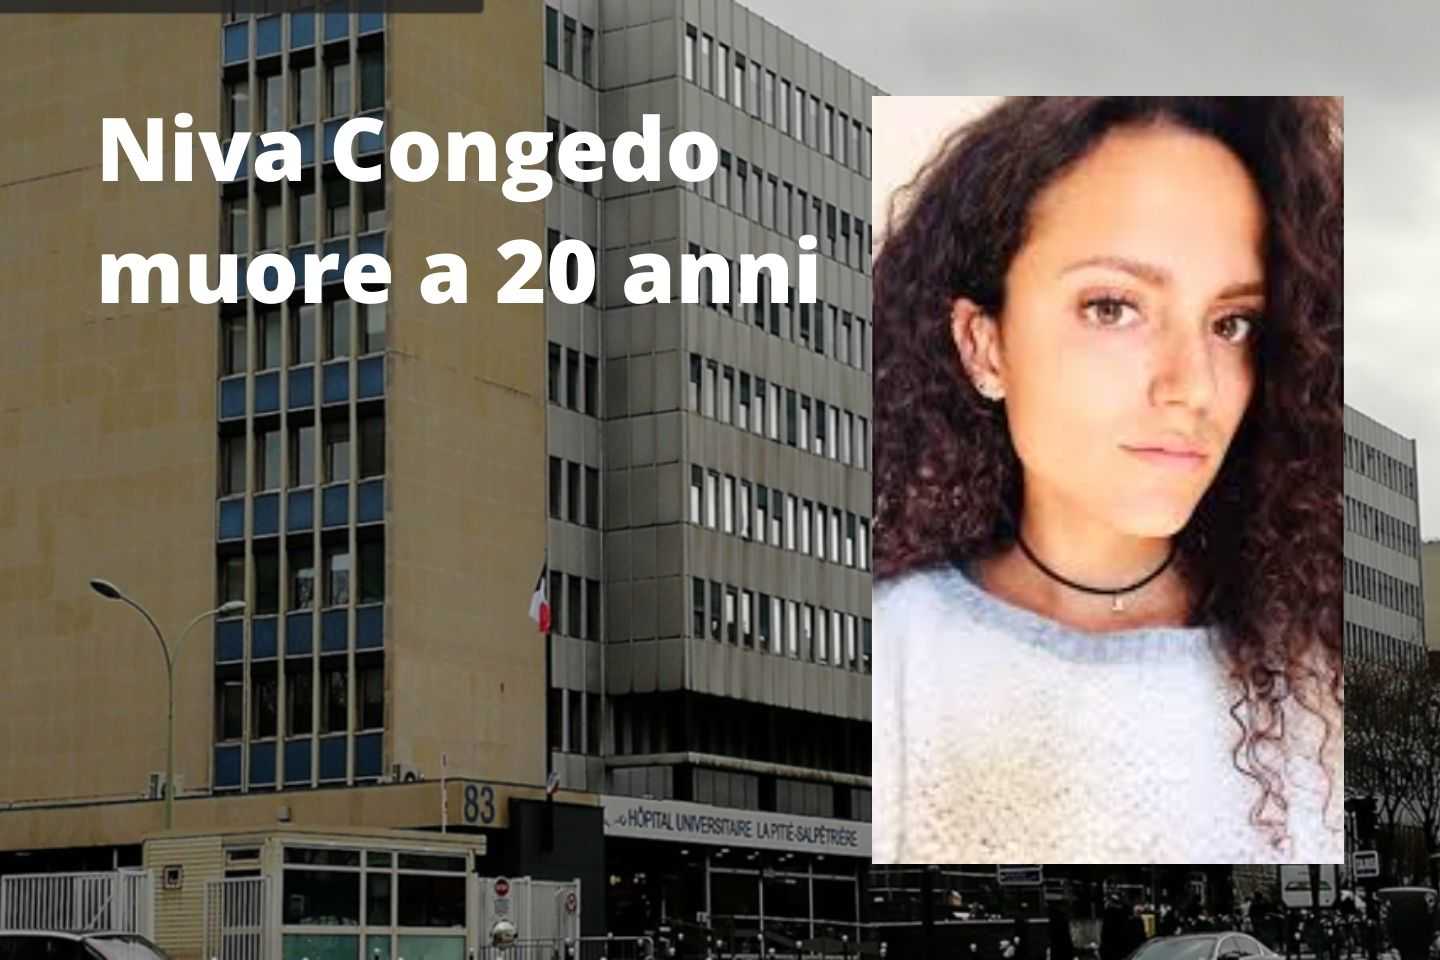 Niva Congedo muore a 20 anni